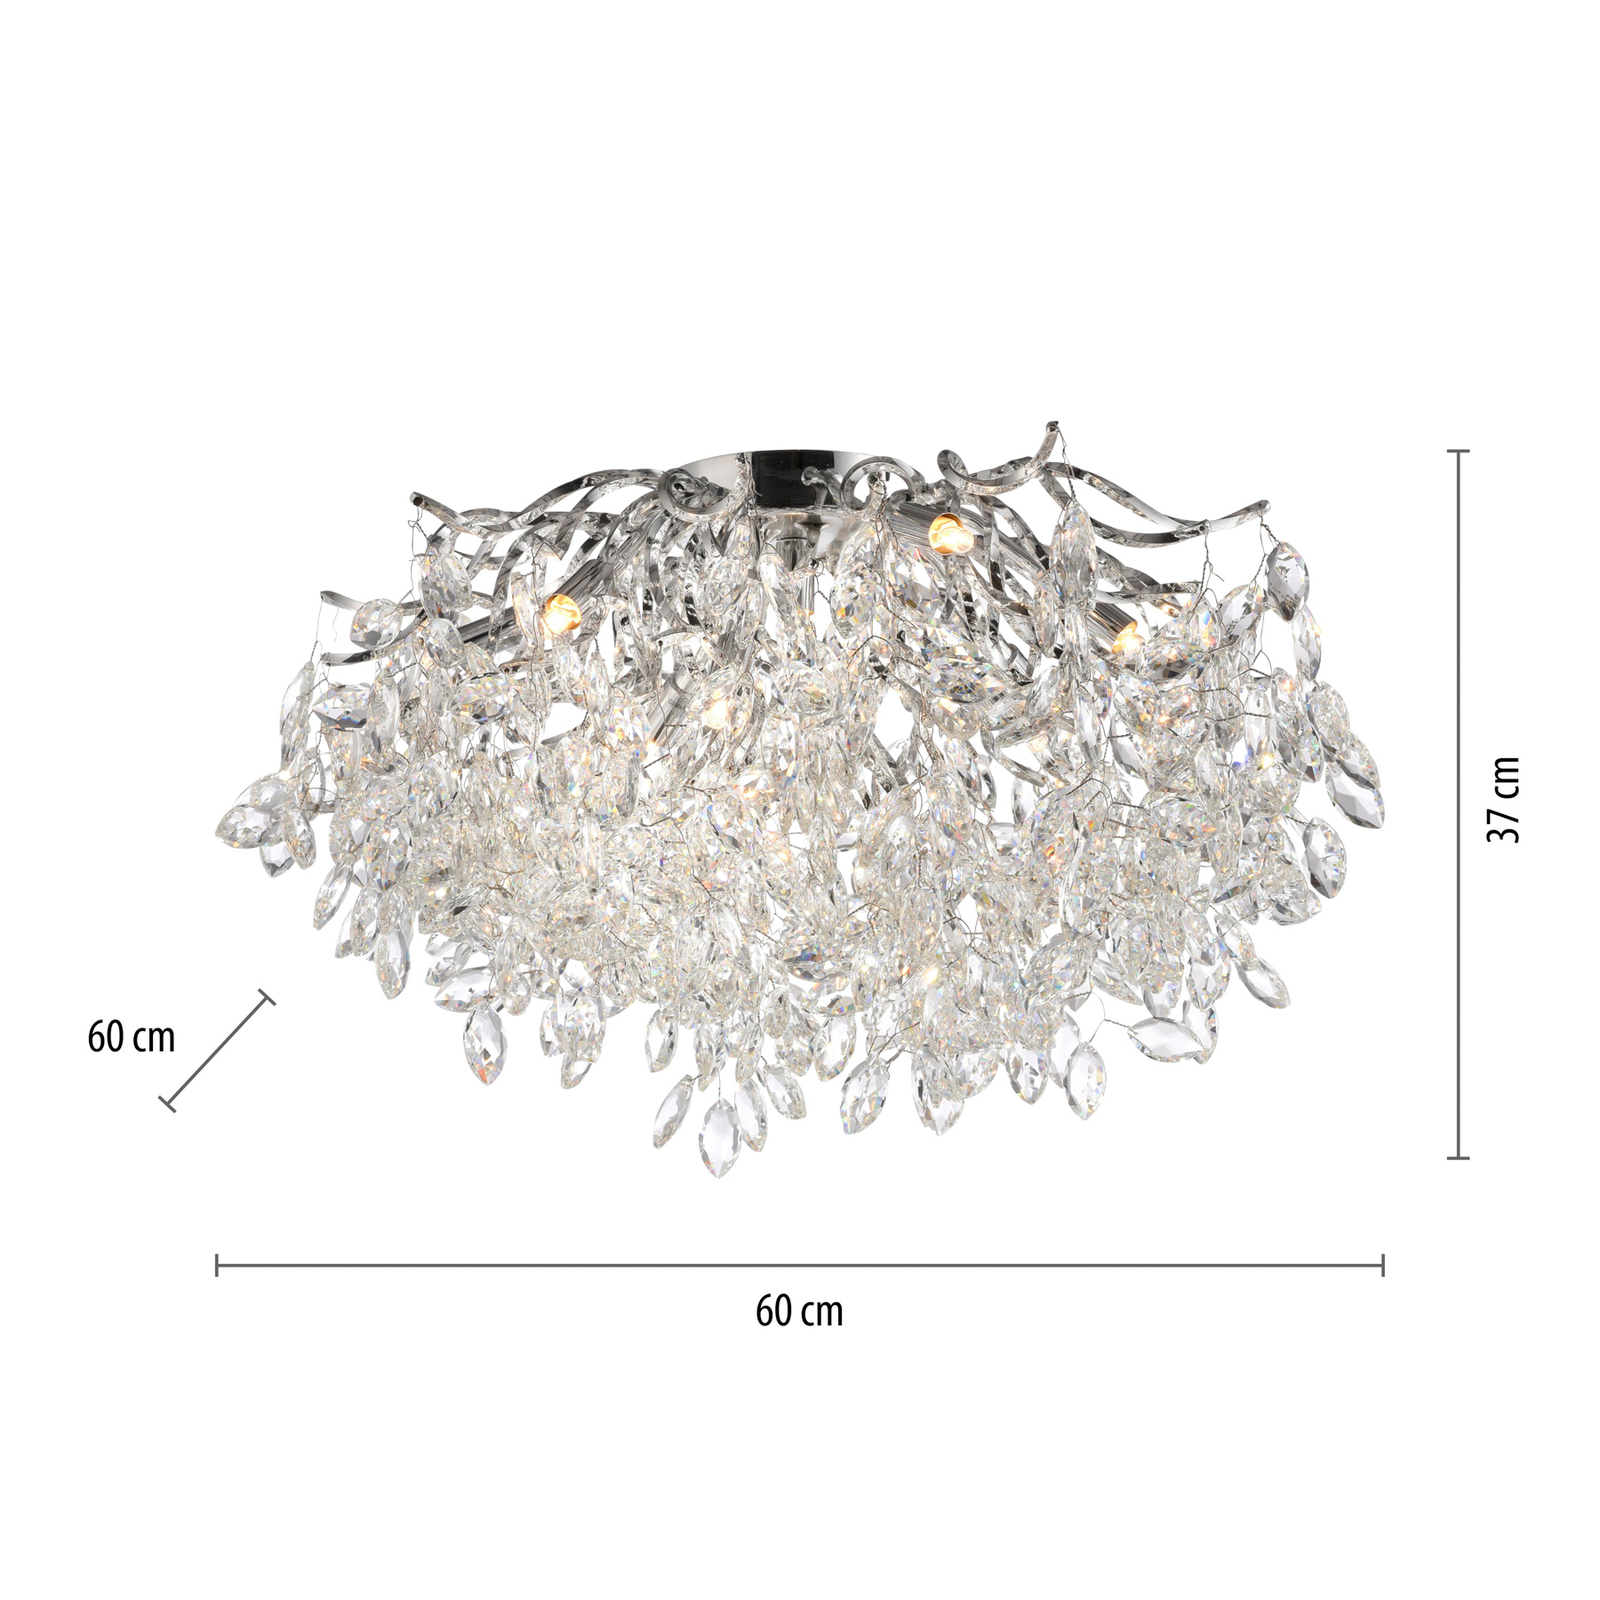 Paul Neuhaus Ricicle loftslampe, krystalpendel, Ø 60 cm